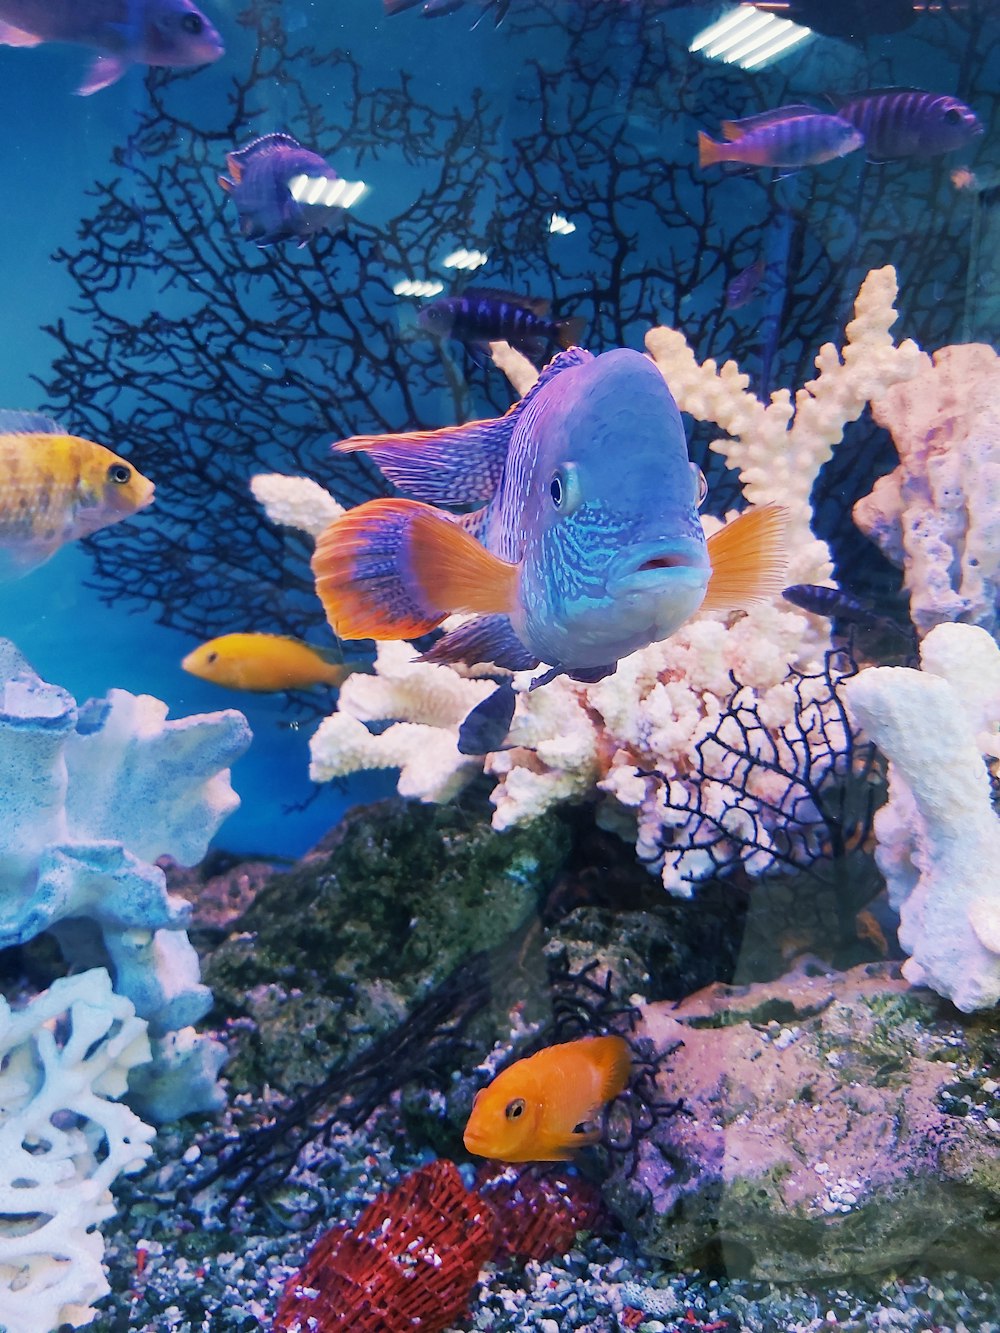 Fish Aquarium Pictures  Download Free Images on Unsplash